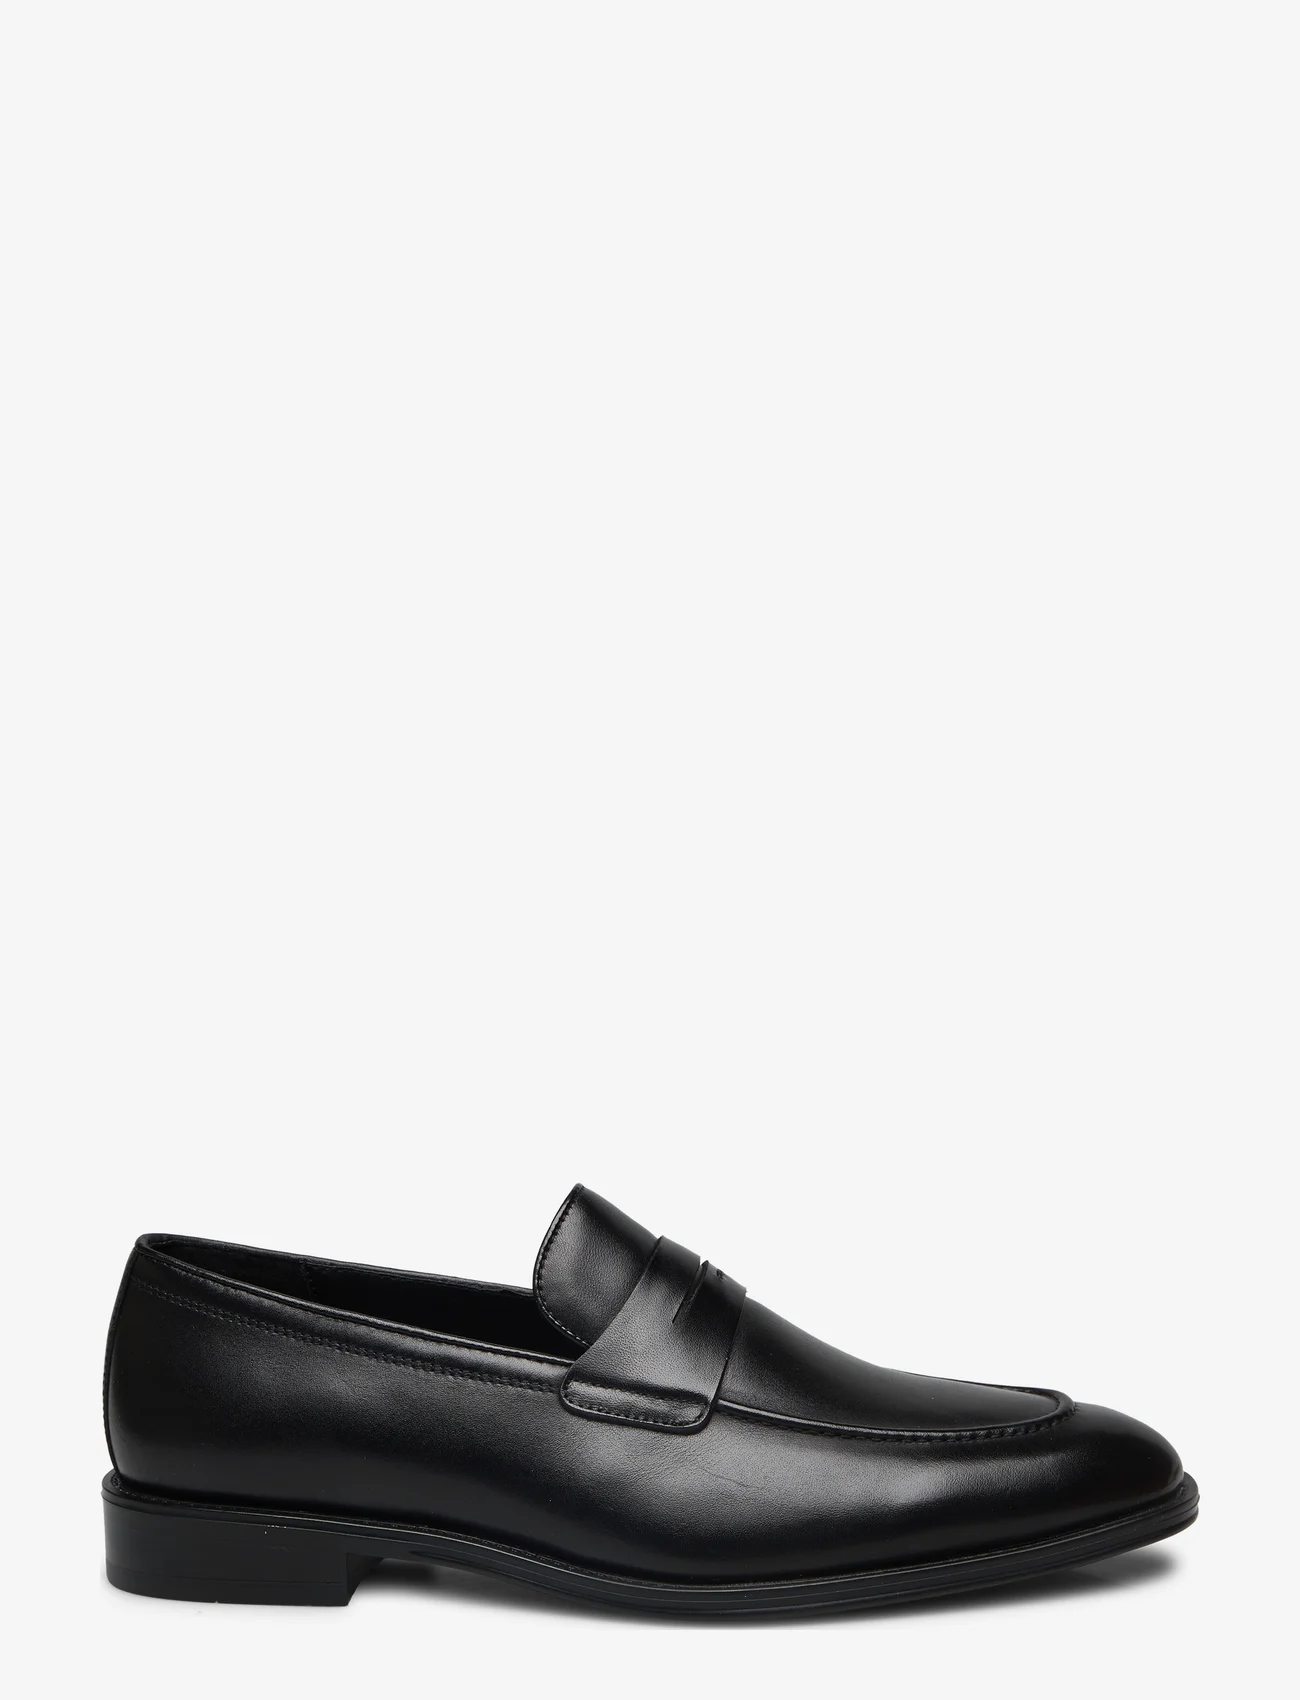 Mango - Aged-leather loafers - lackskor - black - 1